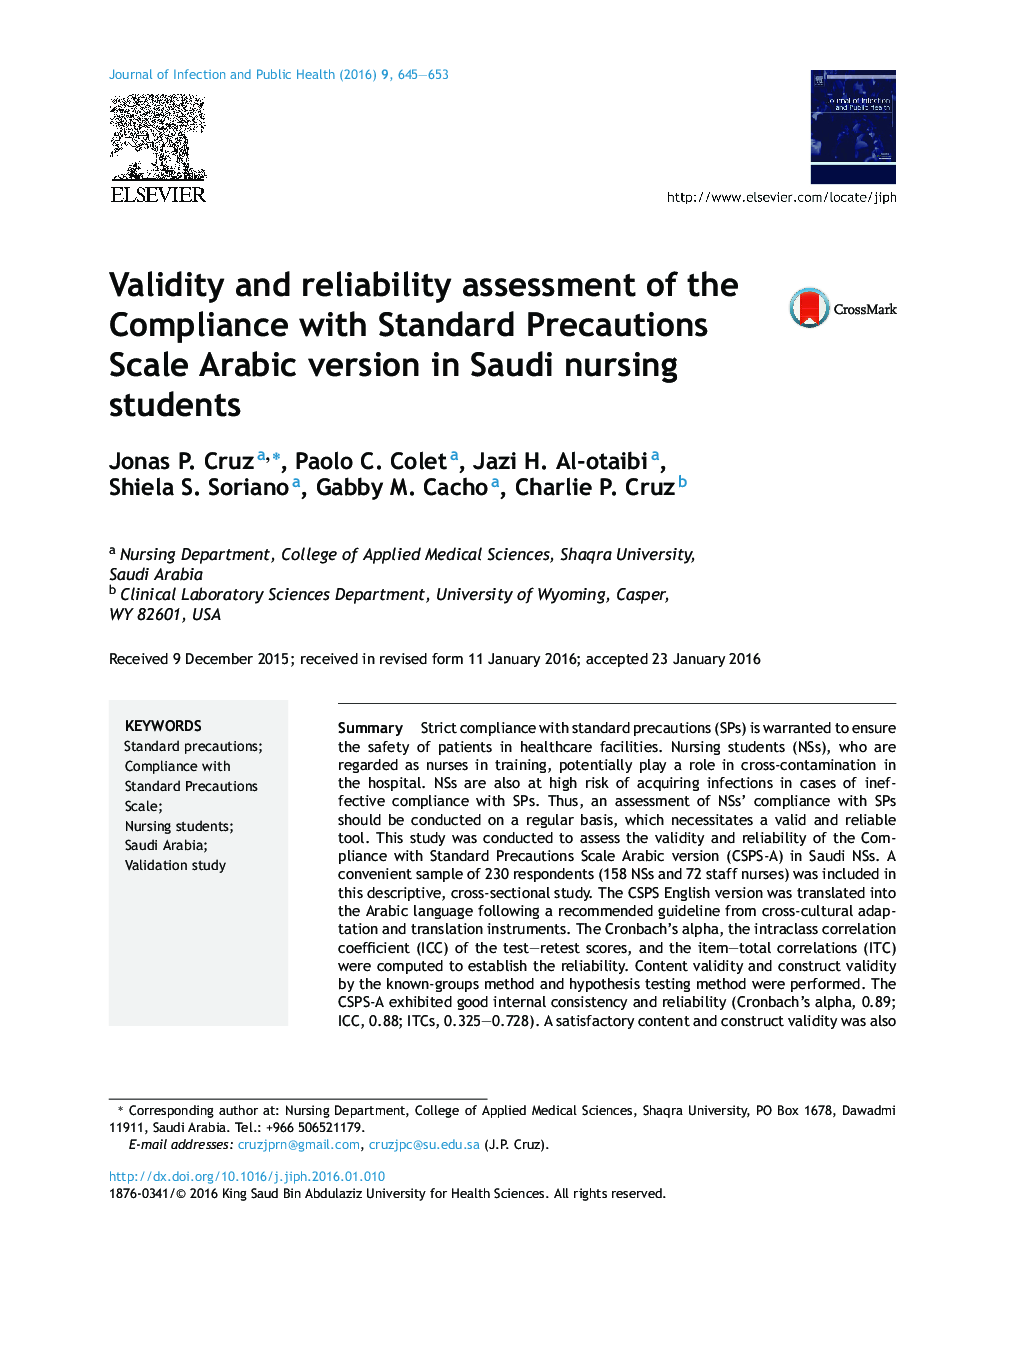 اعتبار و ارزیابی قابلیت اطمینان از انطباق با نسخه عربی مقیاس هشدارهای استاندارد در دانشجویان پرستاری عربستان